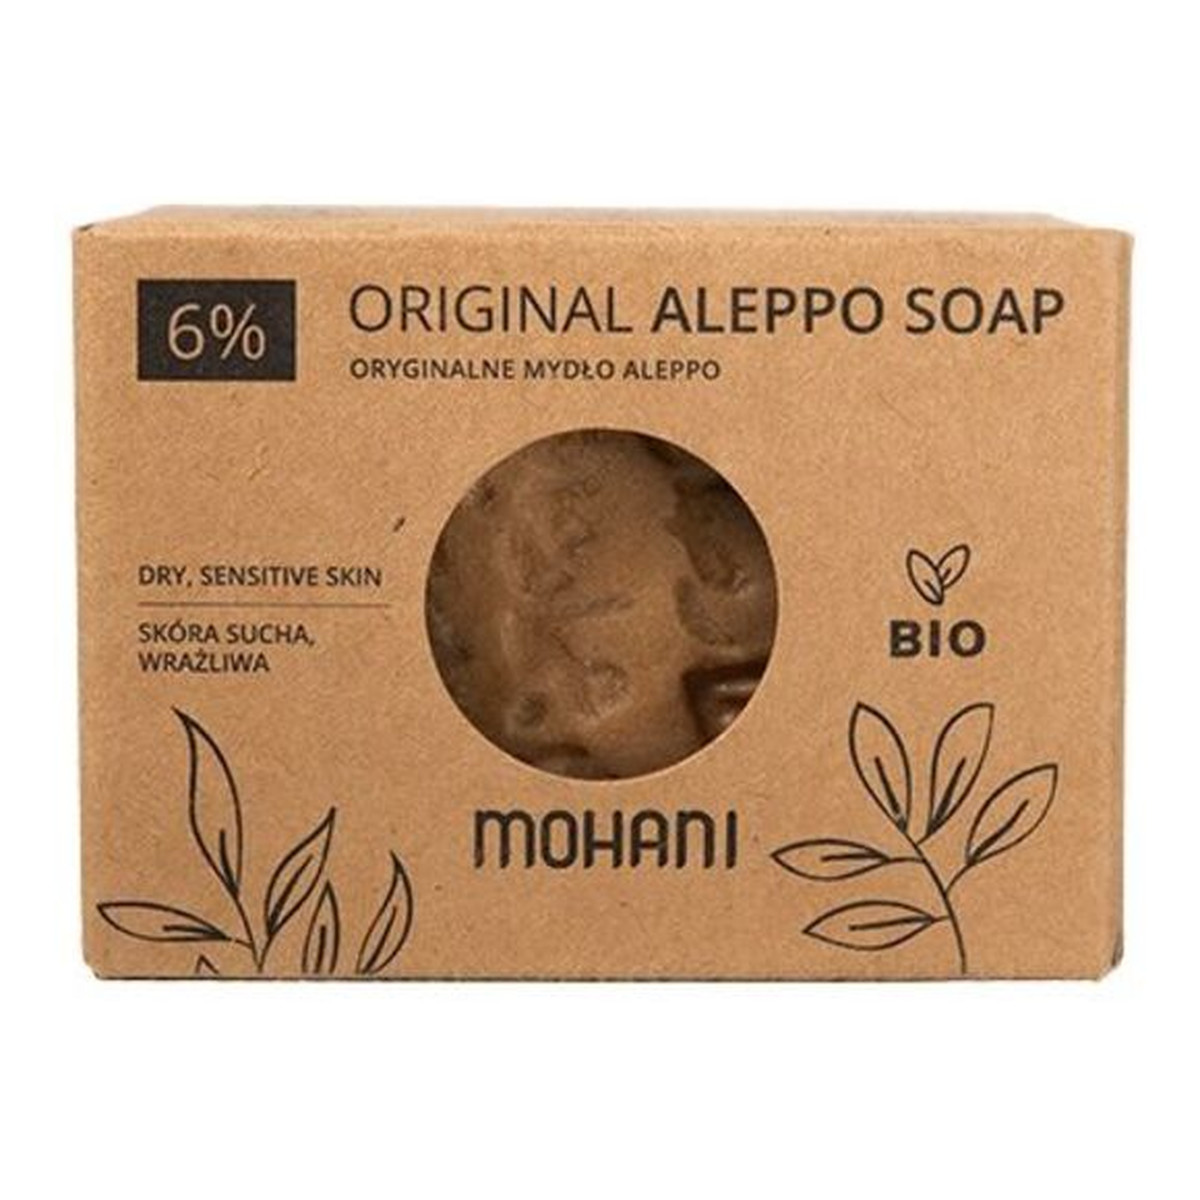 Mohani Aleppo BIO Mydło oliwkowo-laurowe 6% 185g